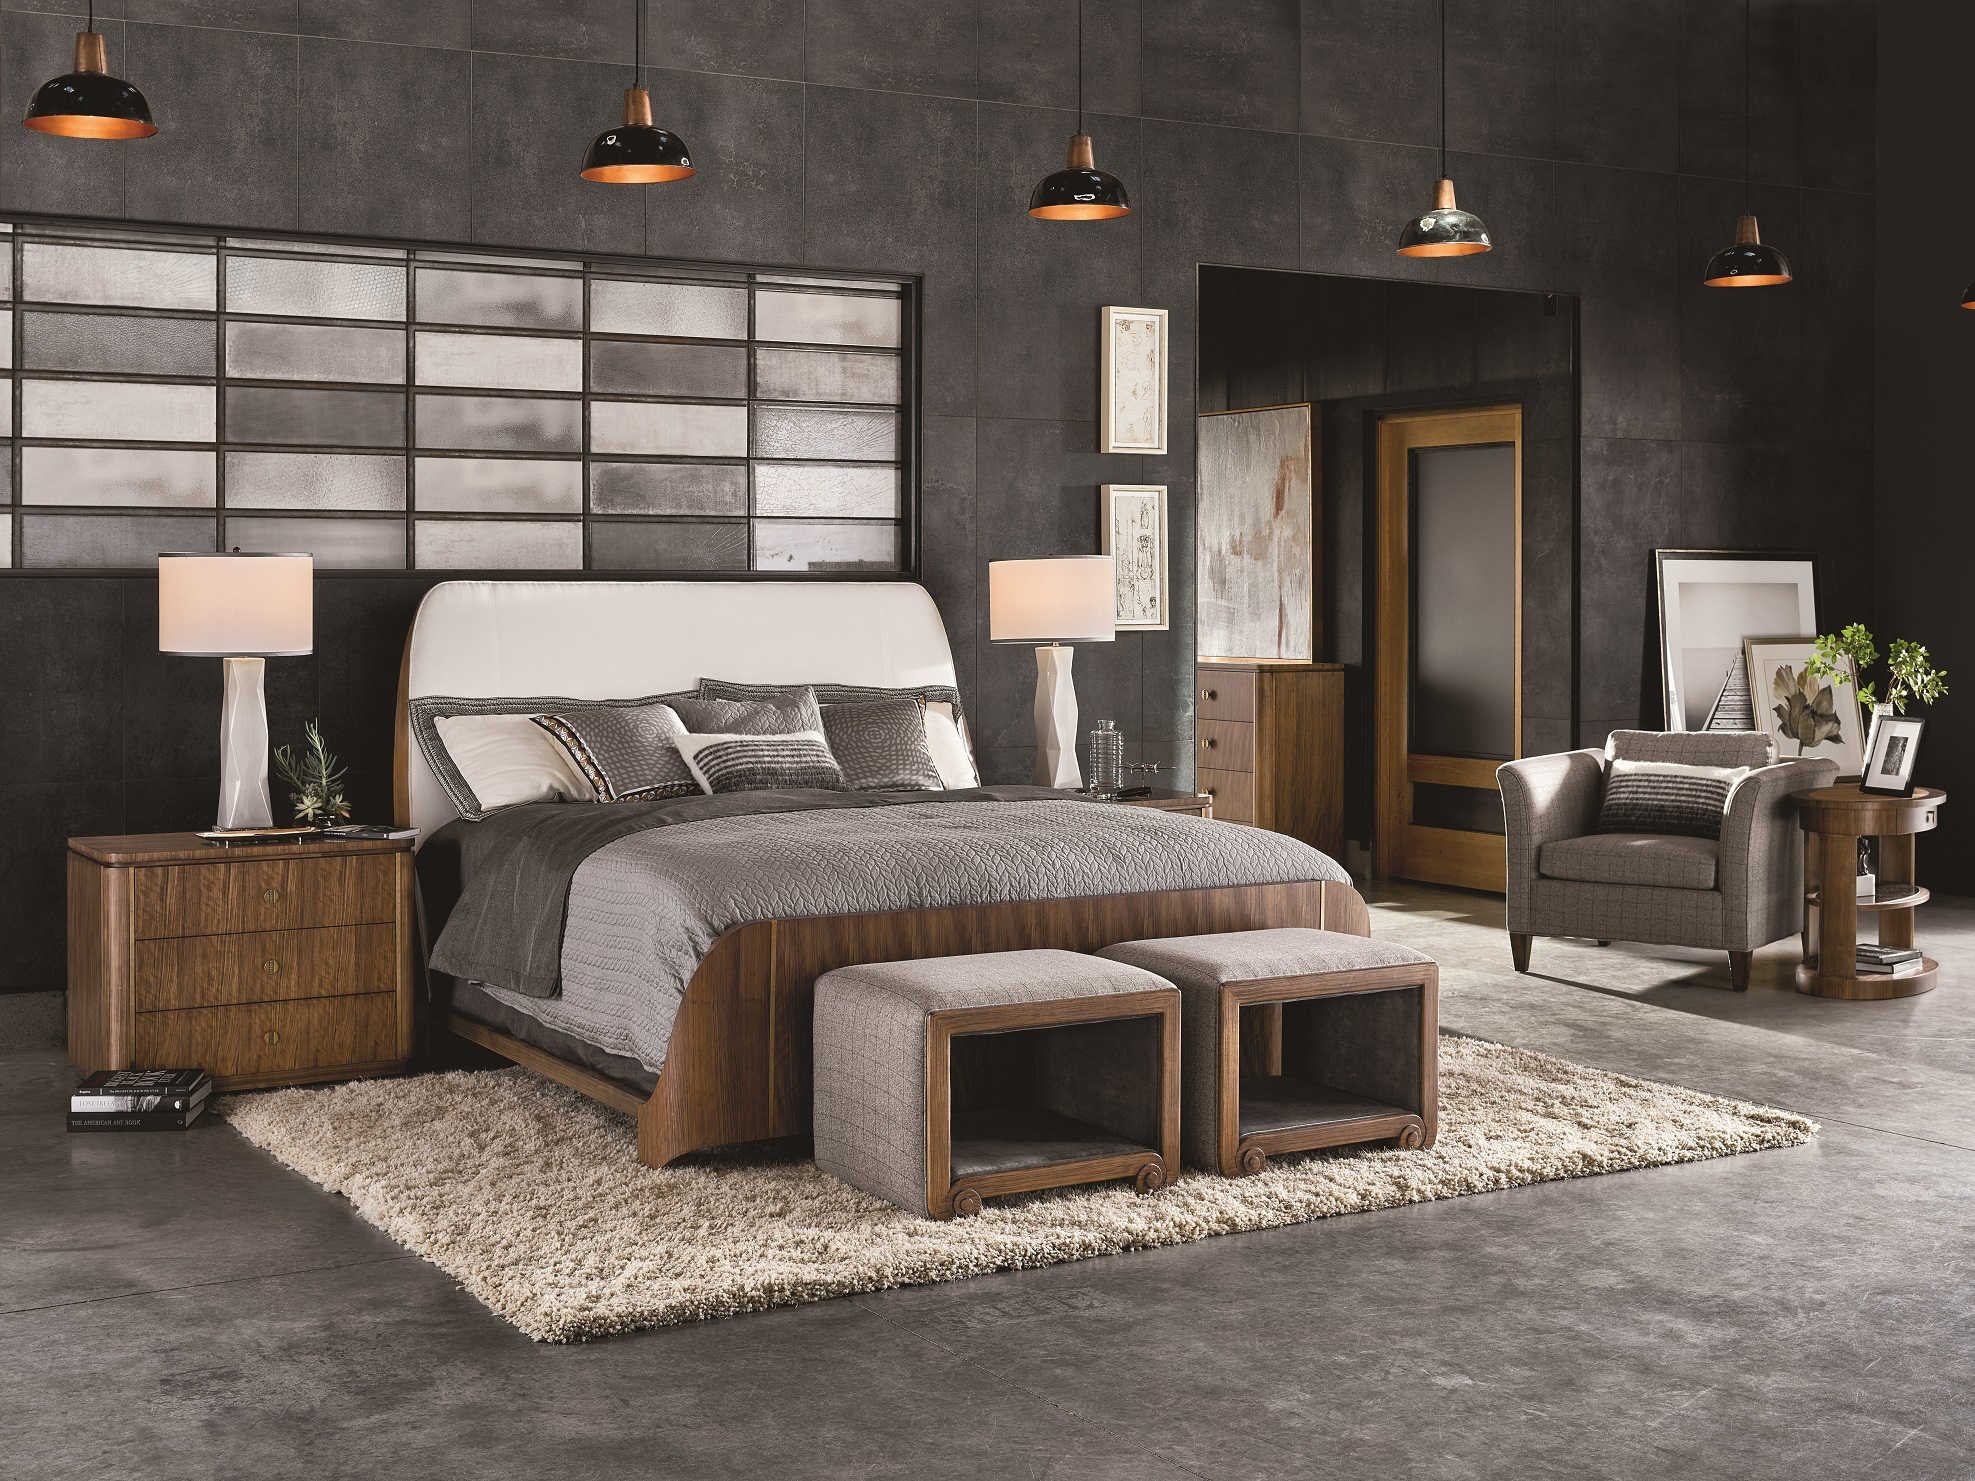 fine furniture design bedroom furniture